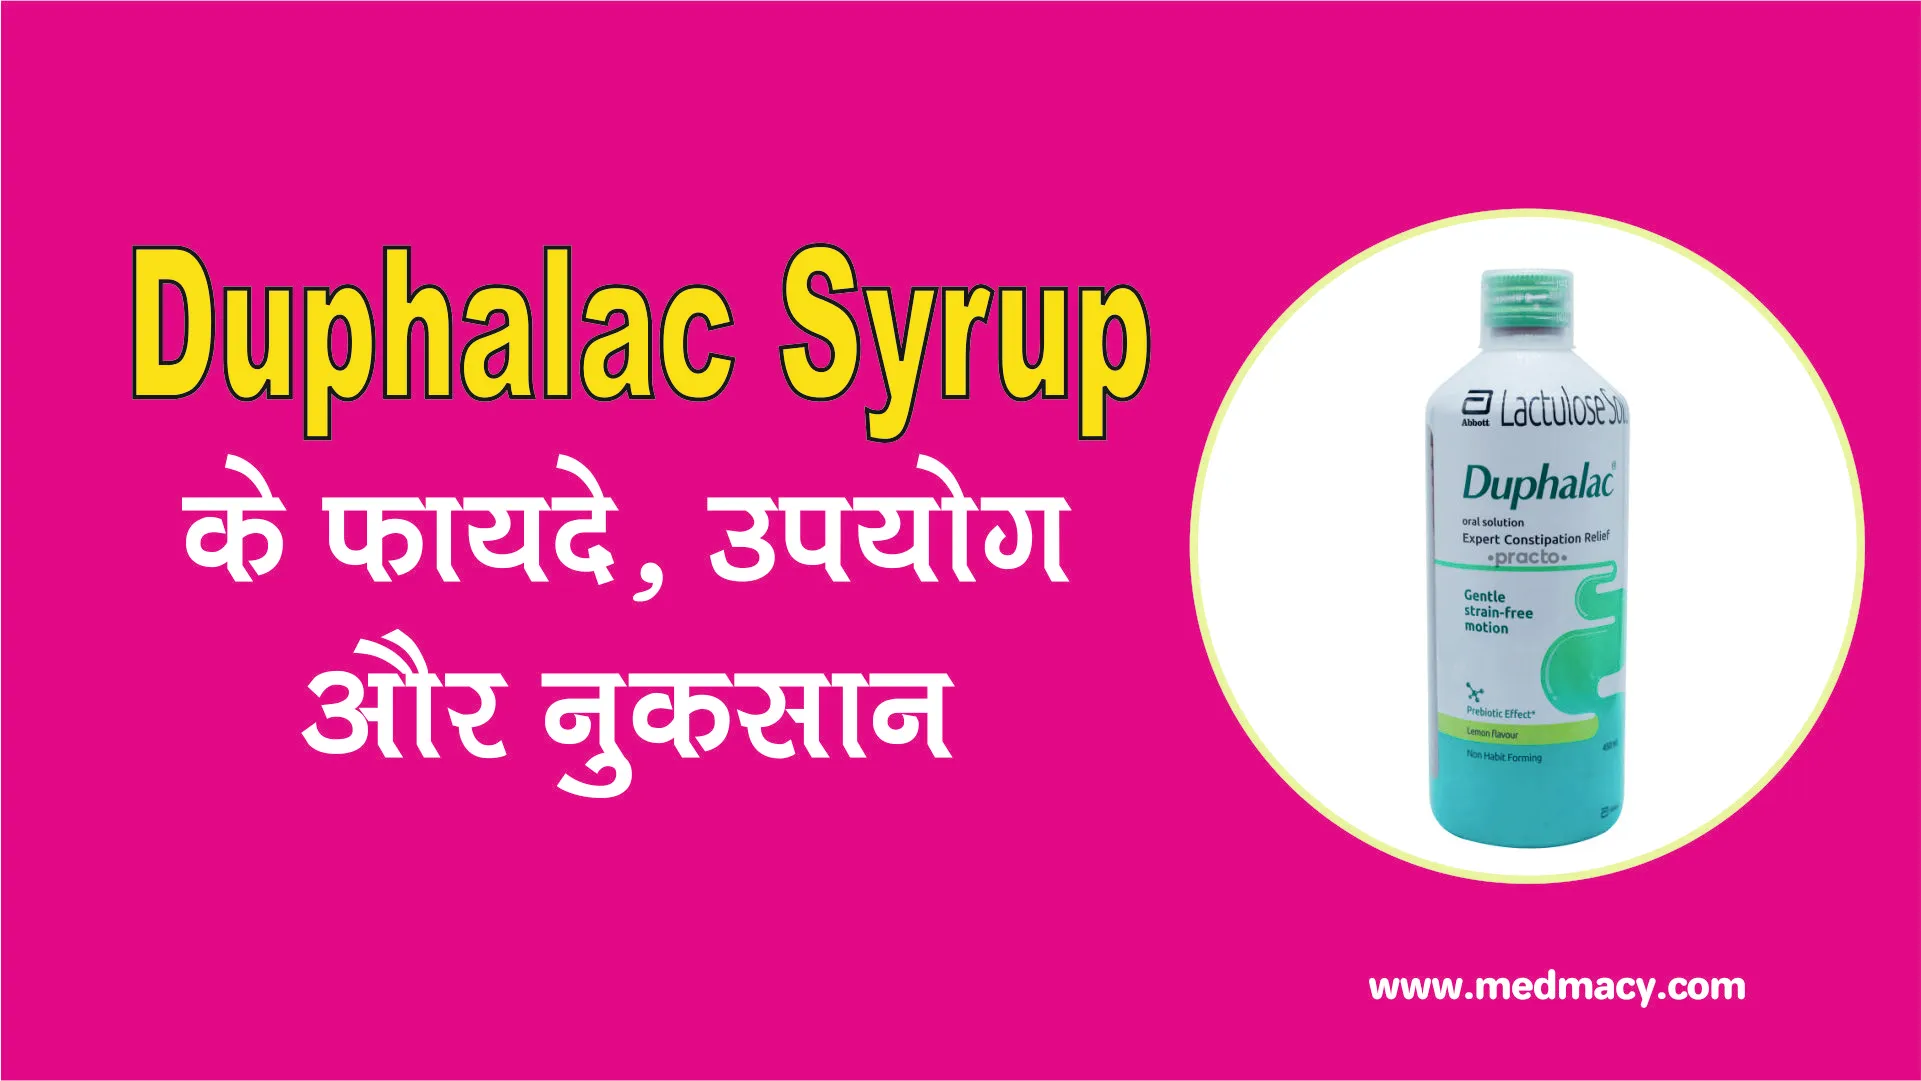 Duphalac Syrup Uses in Hindi